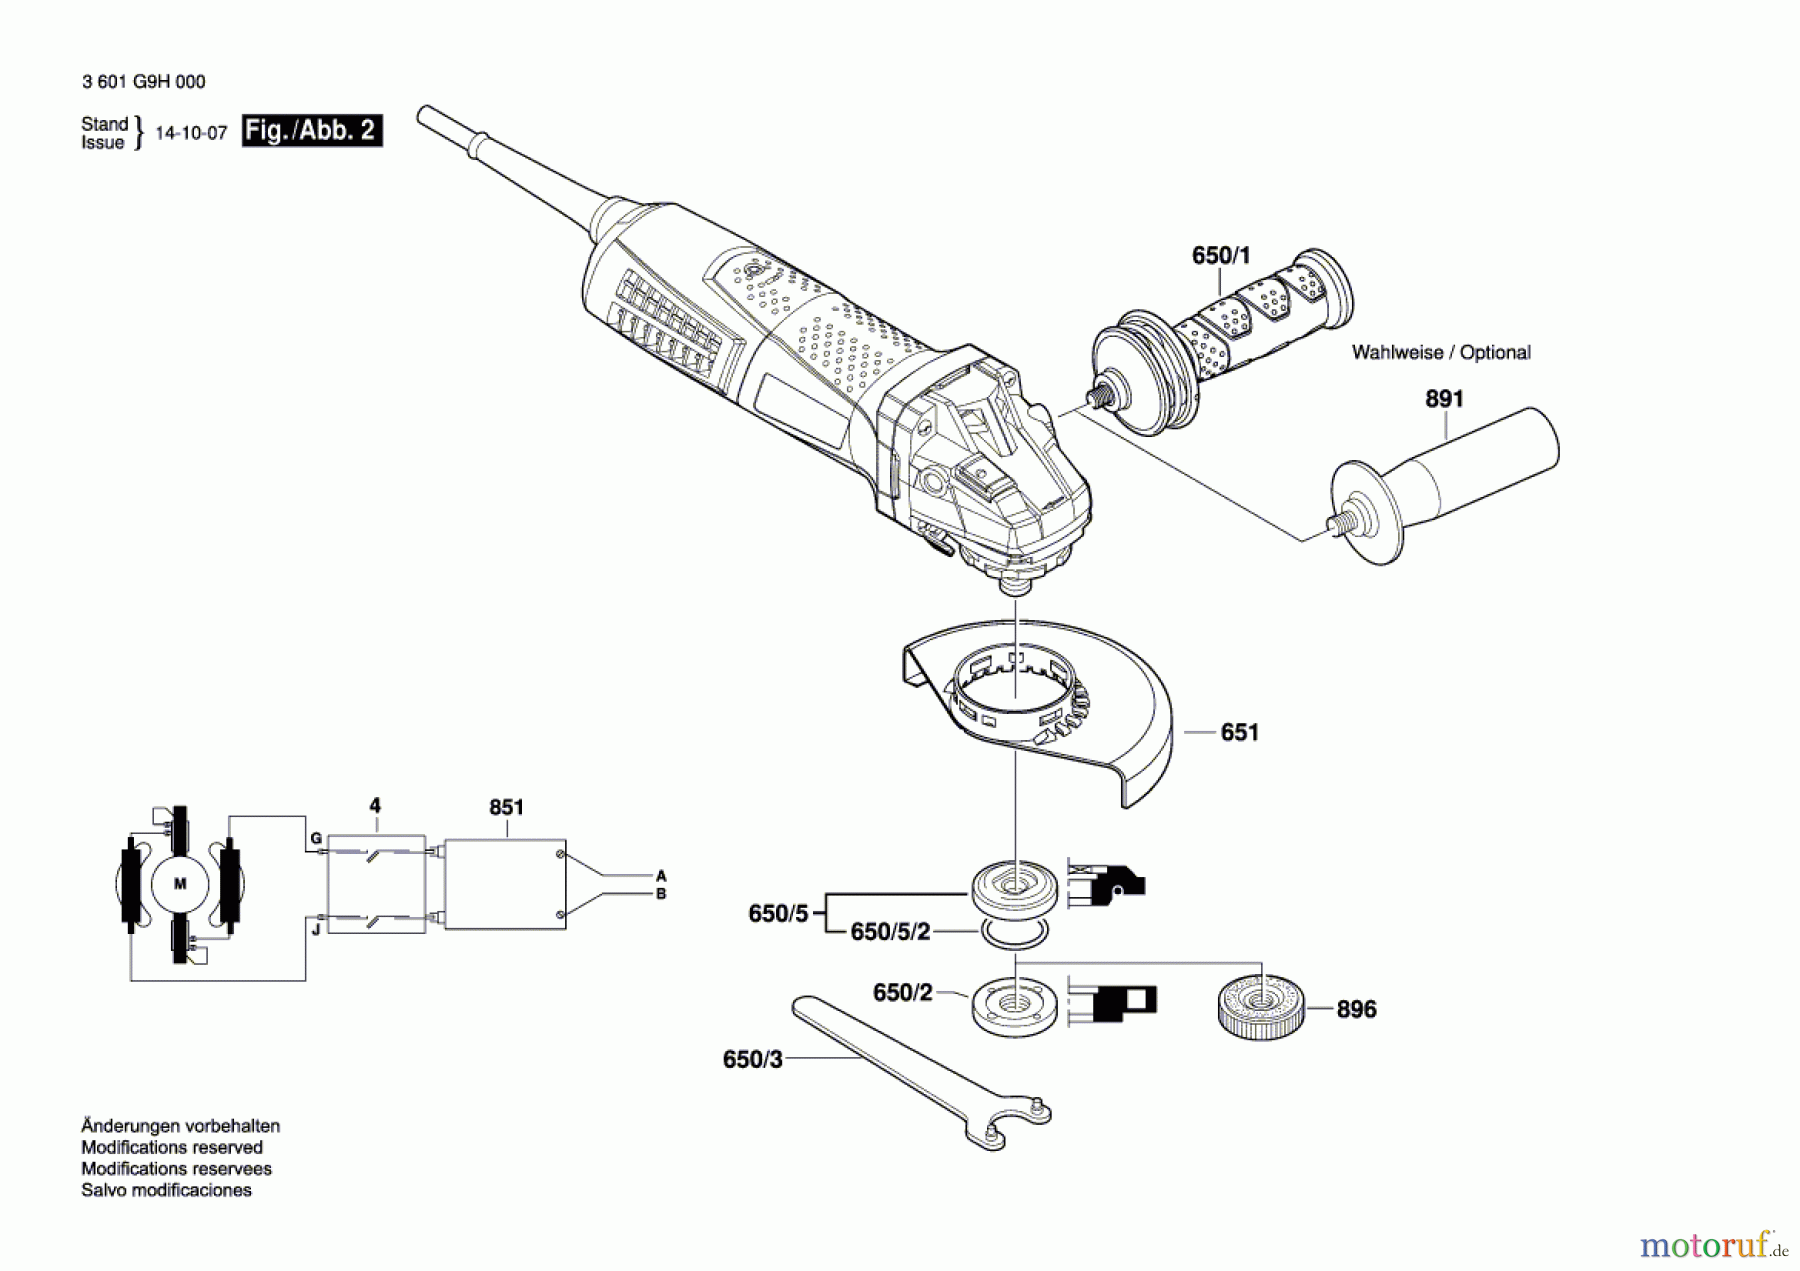  Bosch Werkzeug Winkelschleifer GWS 17-125 CIE Seite 2